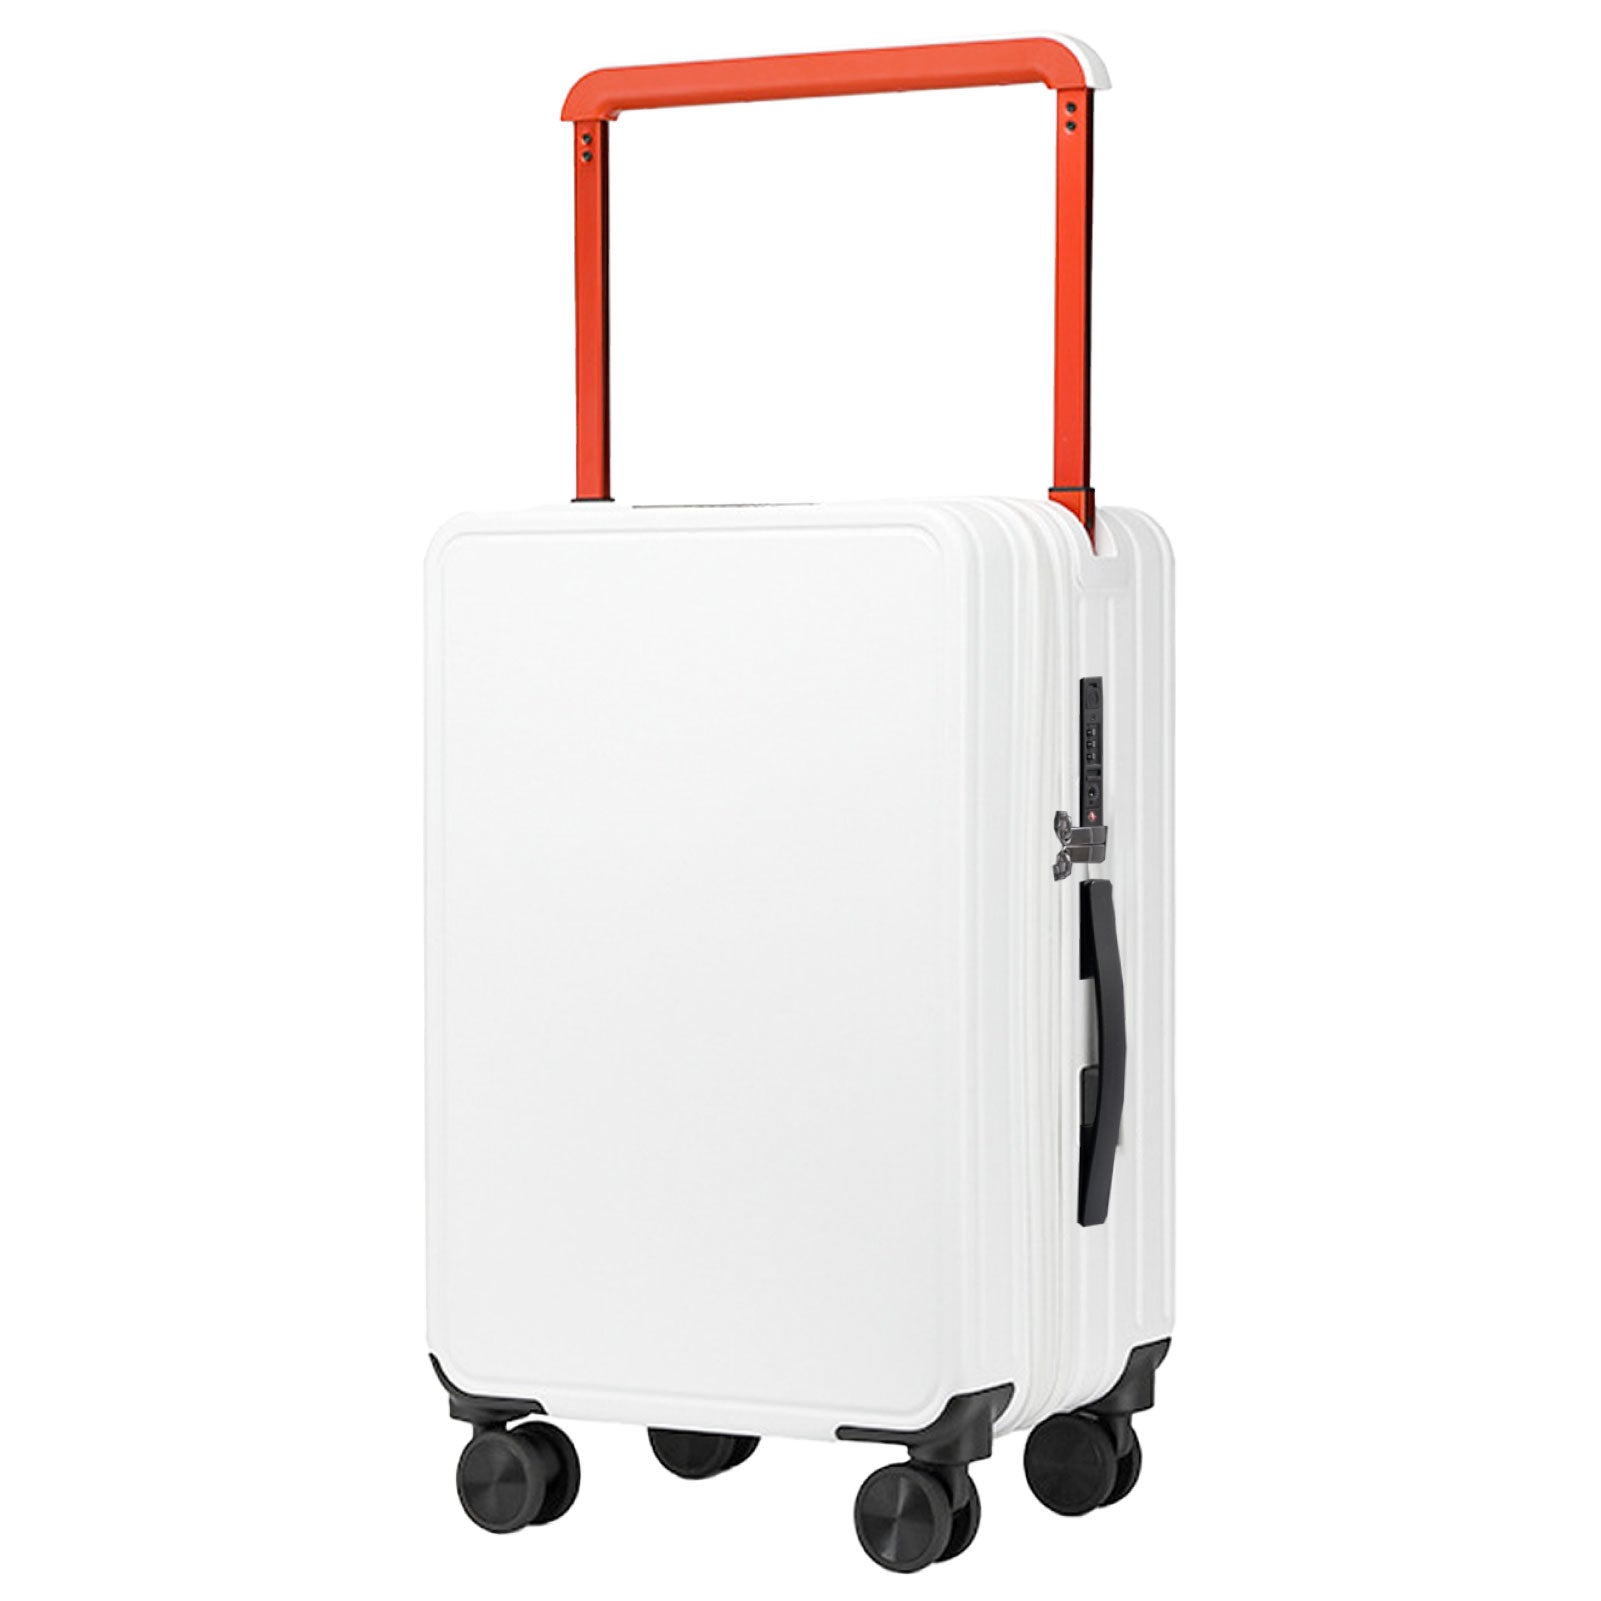 スーツケース USBポート付き キャリーケース キャリーバッグ 6カラー選ぶ 小型1-3日用 宿泊 超軽 大容量 Sサイズ トランク 修学旅行 海外旅行 国内旅行 sc302-20